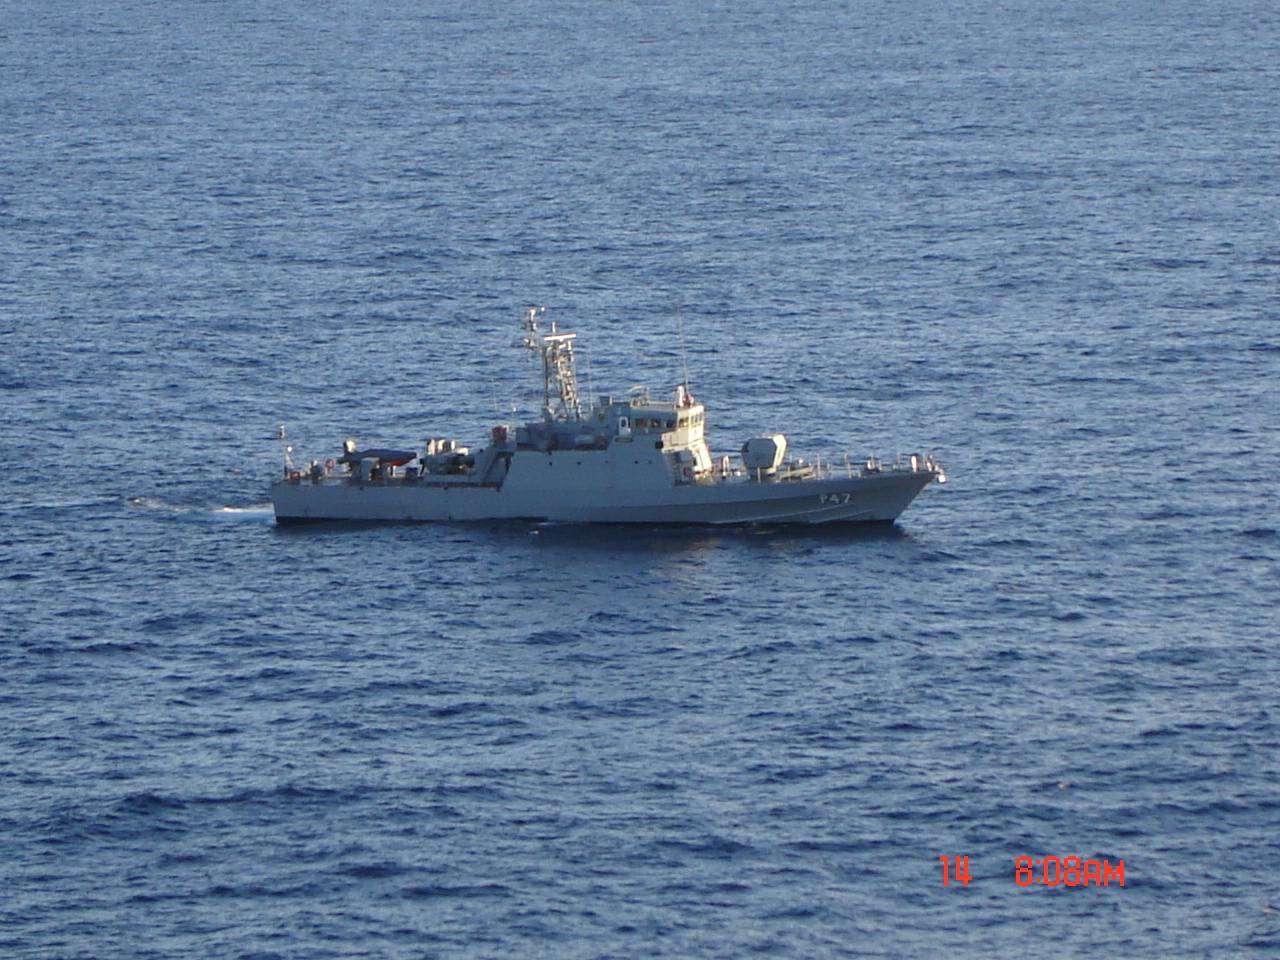  Gurupi, realizando patrulha junto as plataformas da Bacia de Campos em julho de 2008. (foto: NGB) 